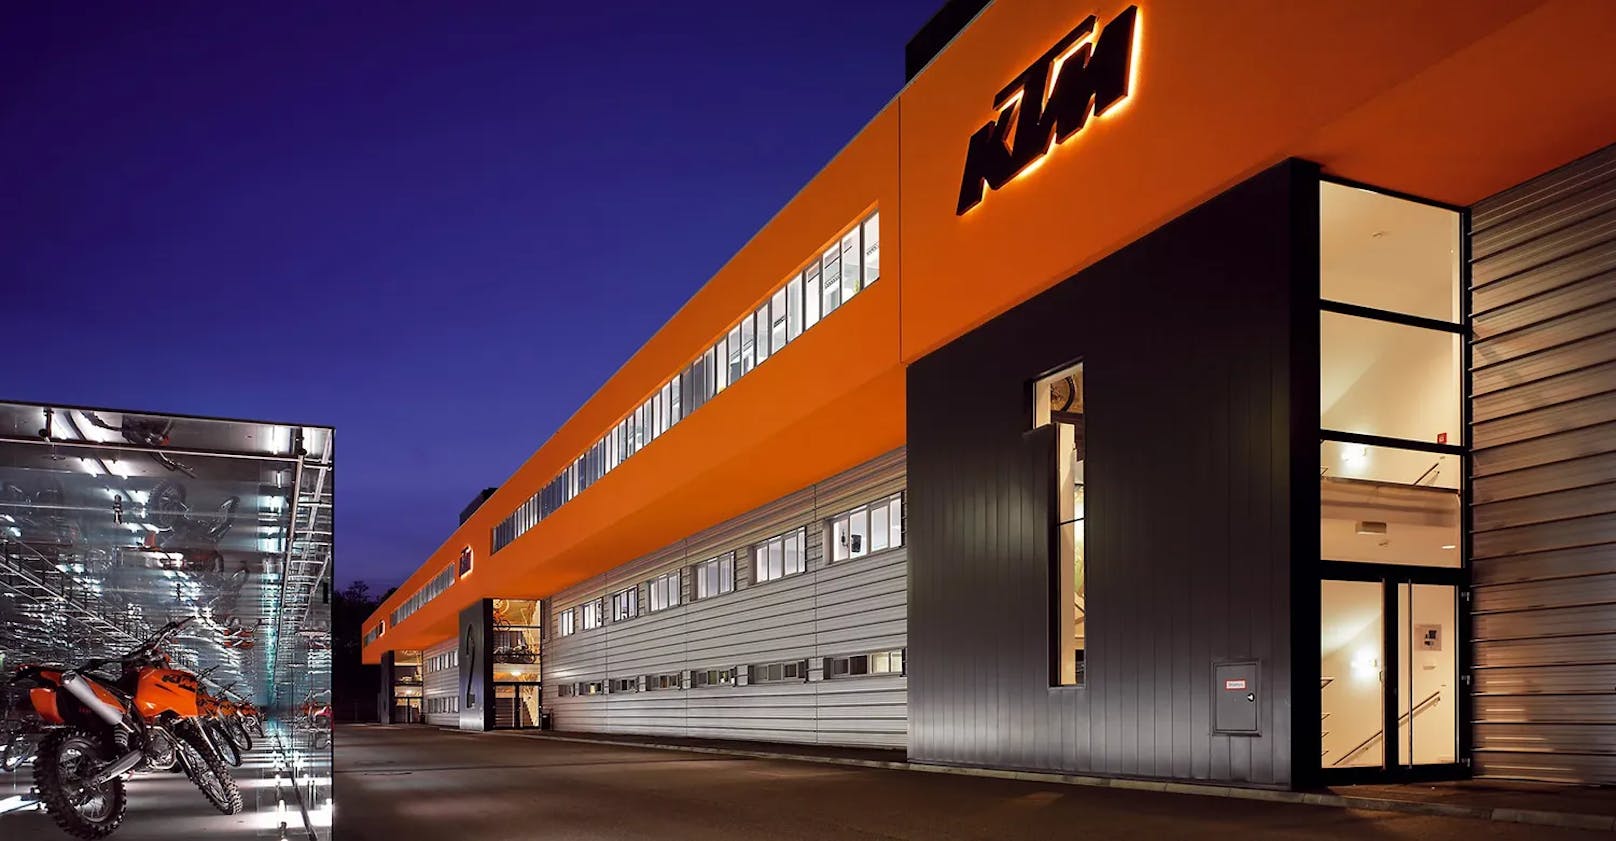 Bei KTM konnten die Mitarbeiter zumindest vorübergehend auf eine 4-Tage-Woche umstellen.